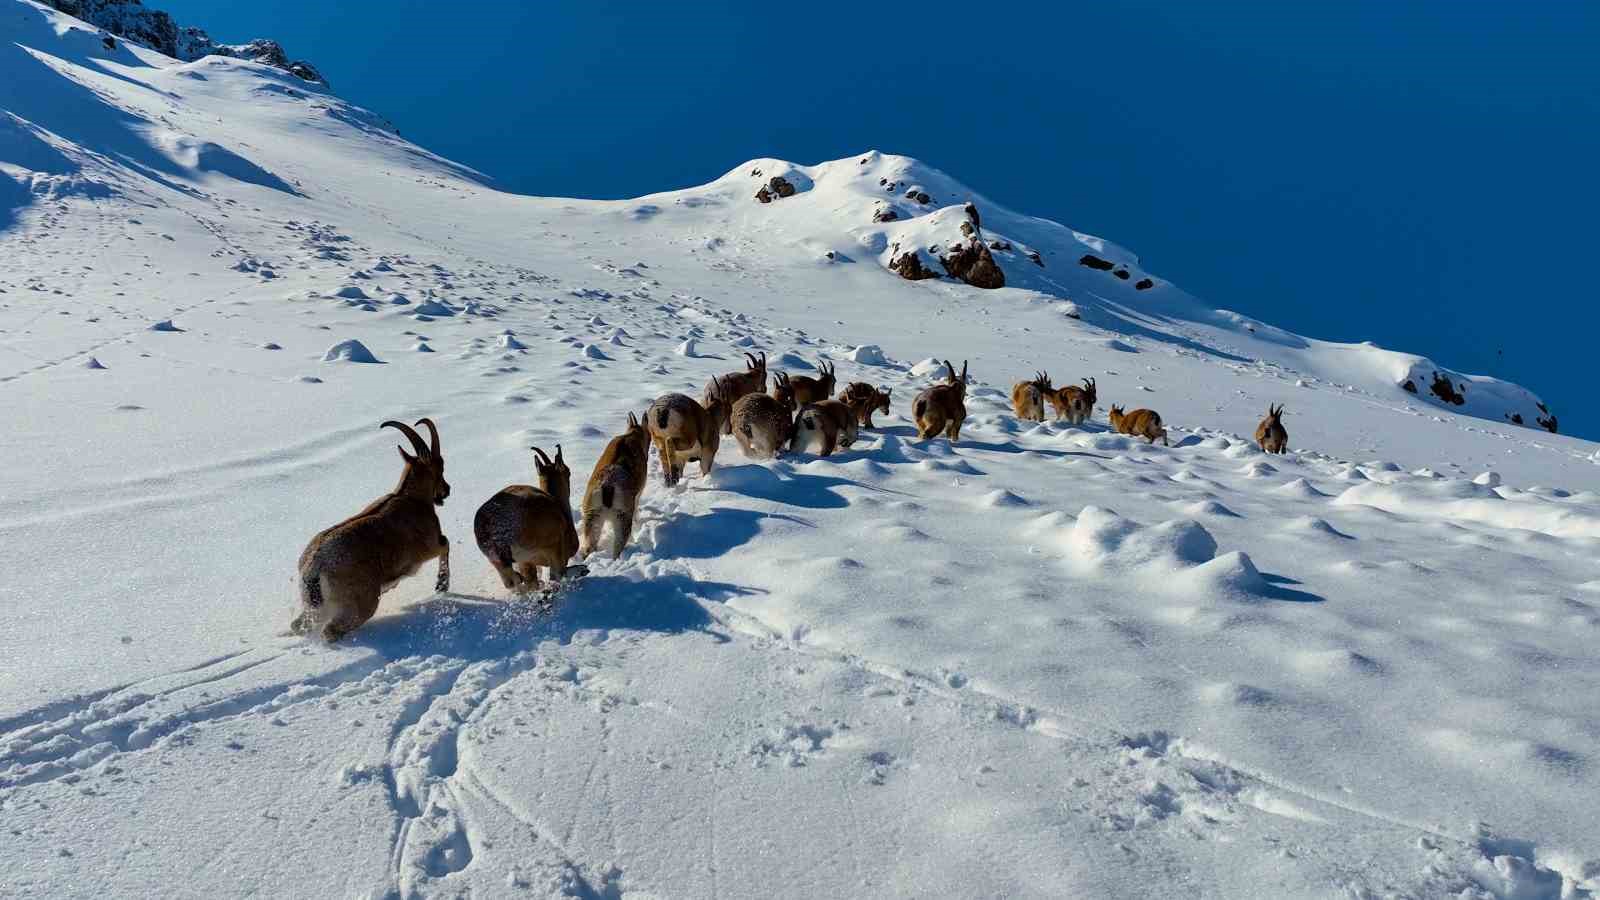 karlı dağları aşarak göç yoluna koyulan yaban keçileri belgesel tadında görüntü oluşturdu